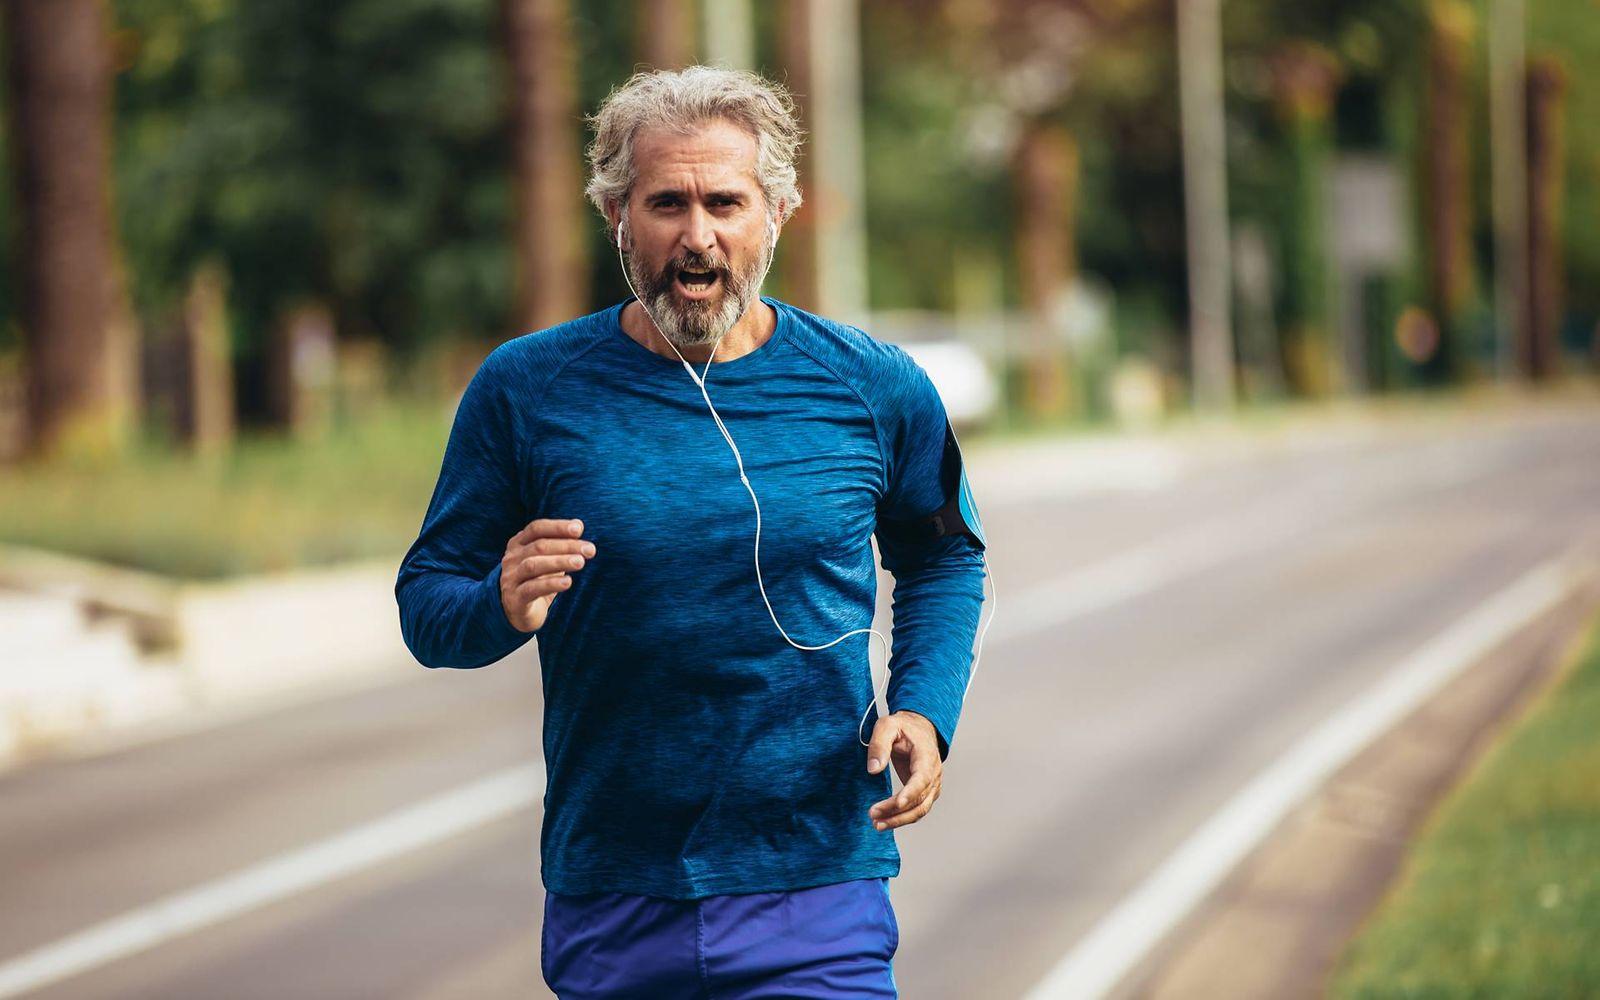 Sportmedizinische Untersuchung: Älterer Mann joggt Straße entlang